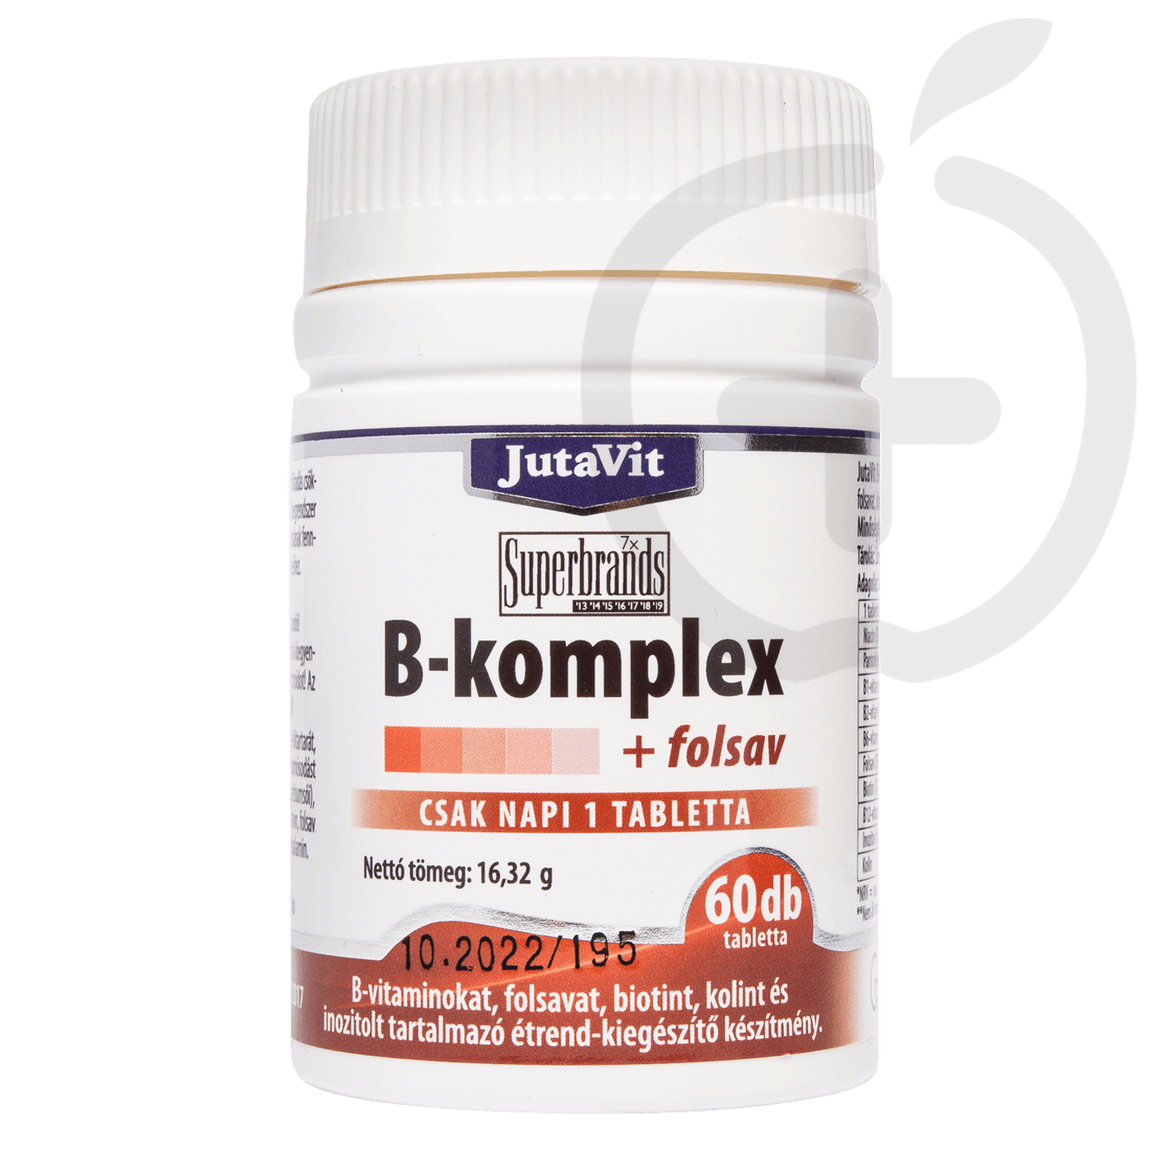 Jutavit B Komplex Folsav tabletta